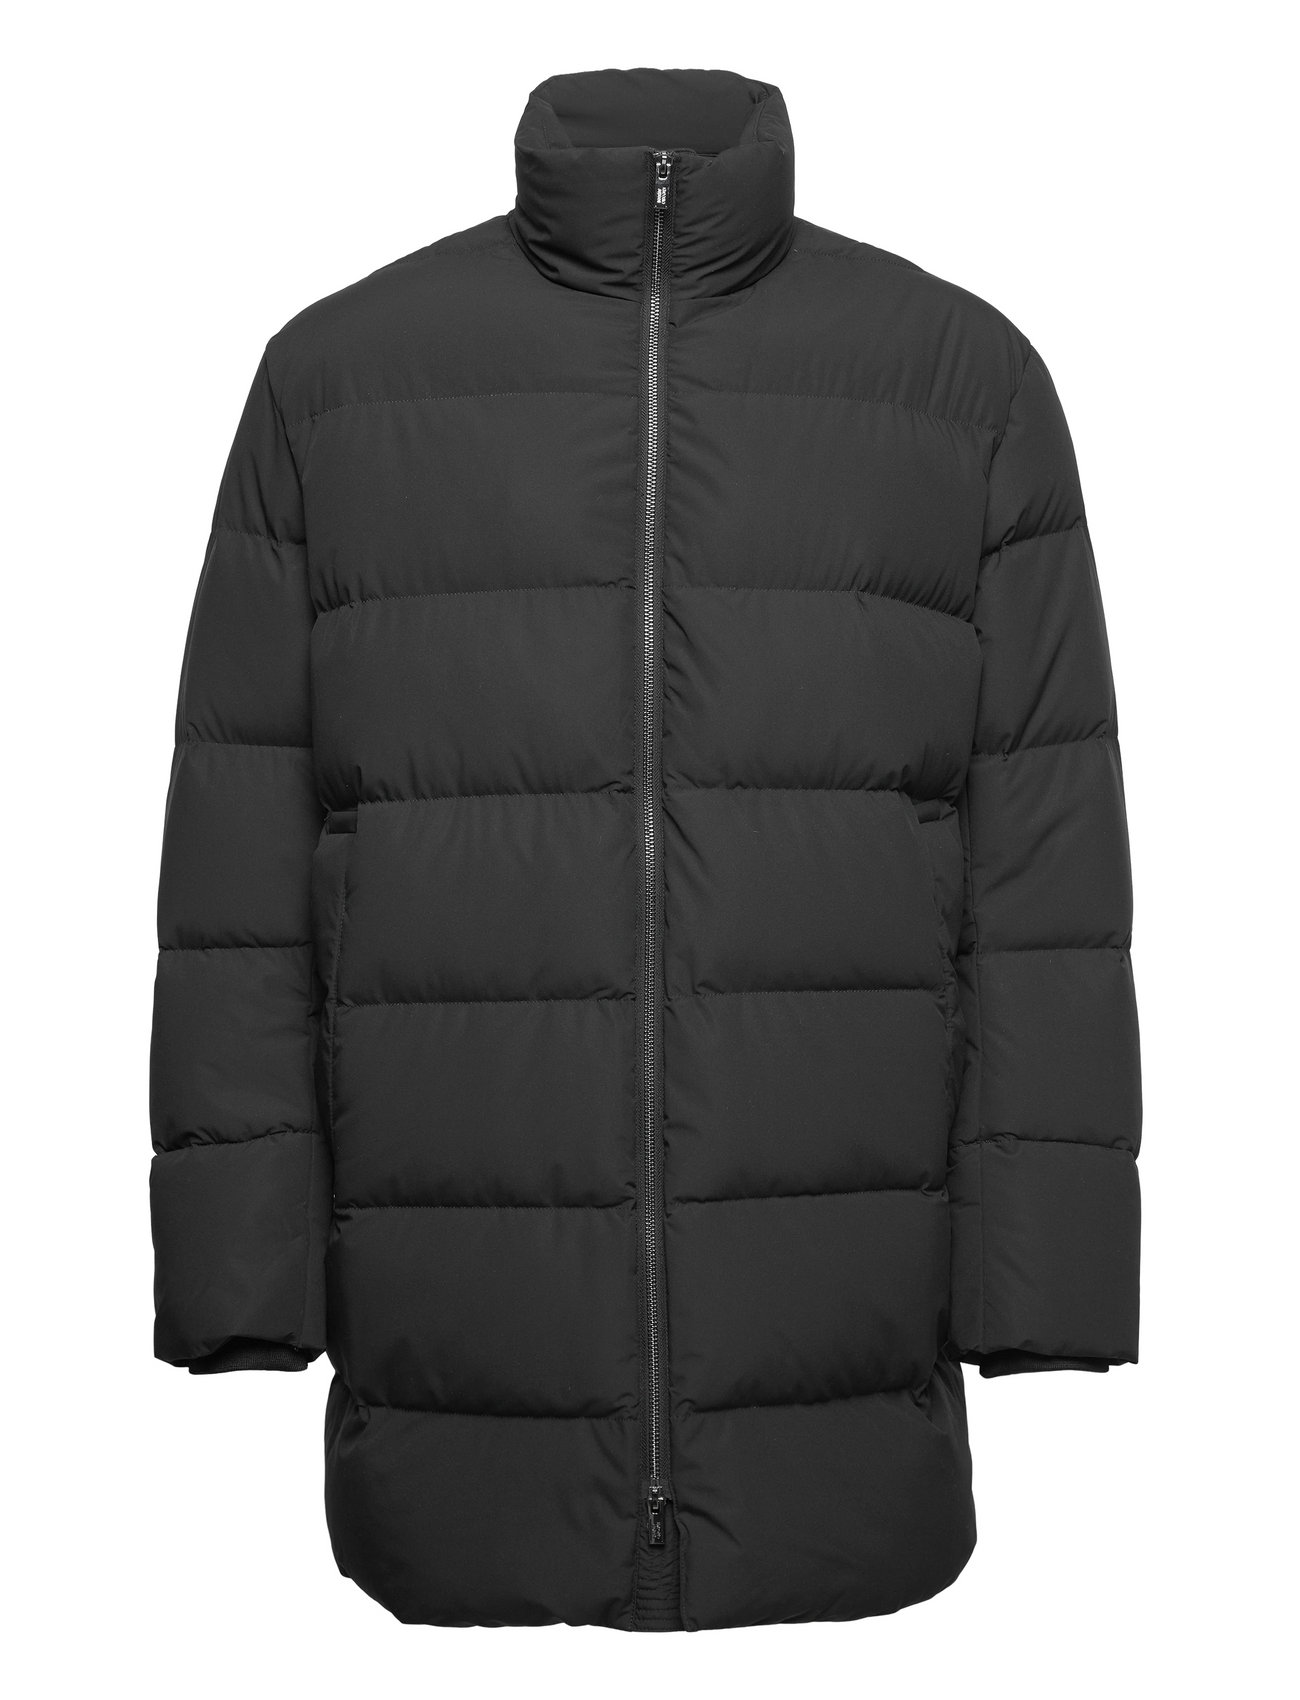 Emporio Duvet - 2015 Køb Forede jakker fra Emporio Armani online Boozt.com. Hurtig levering & nem retur